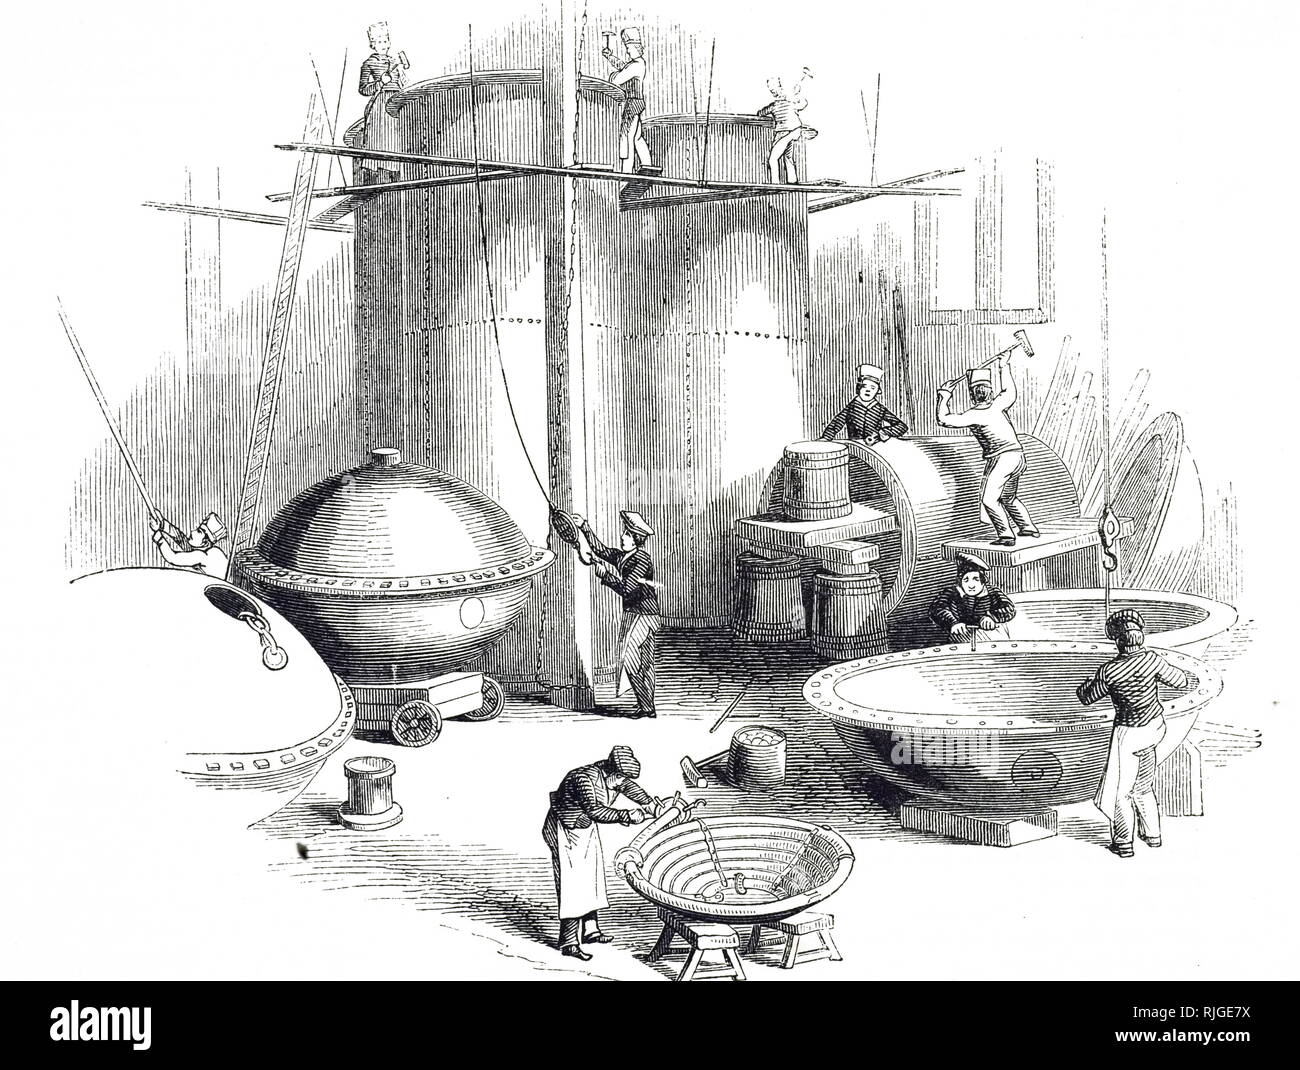 Una incisione raffigurante il ramaio il negozio, i sigg. E. & W. Pontifex la fabbrica, scarpa Lane, Londra. Questa fabbrica specializzata nella produzione di navi per le raffinerie di zucchero, birrerie e distillerie. Datata del XIX secolo Foto Stock